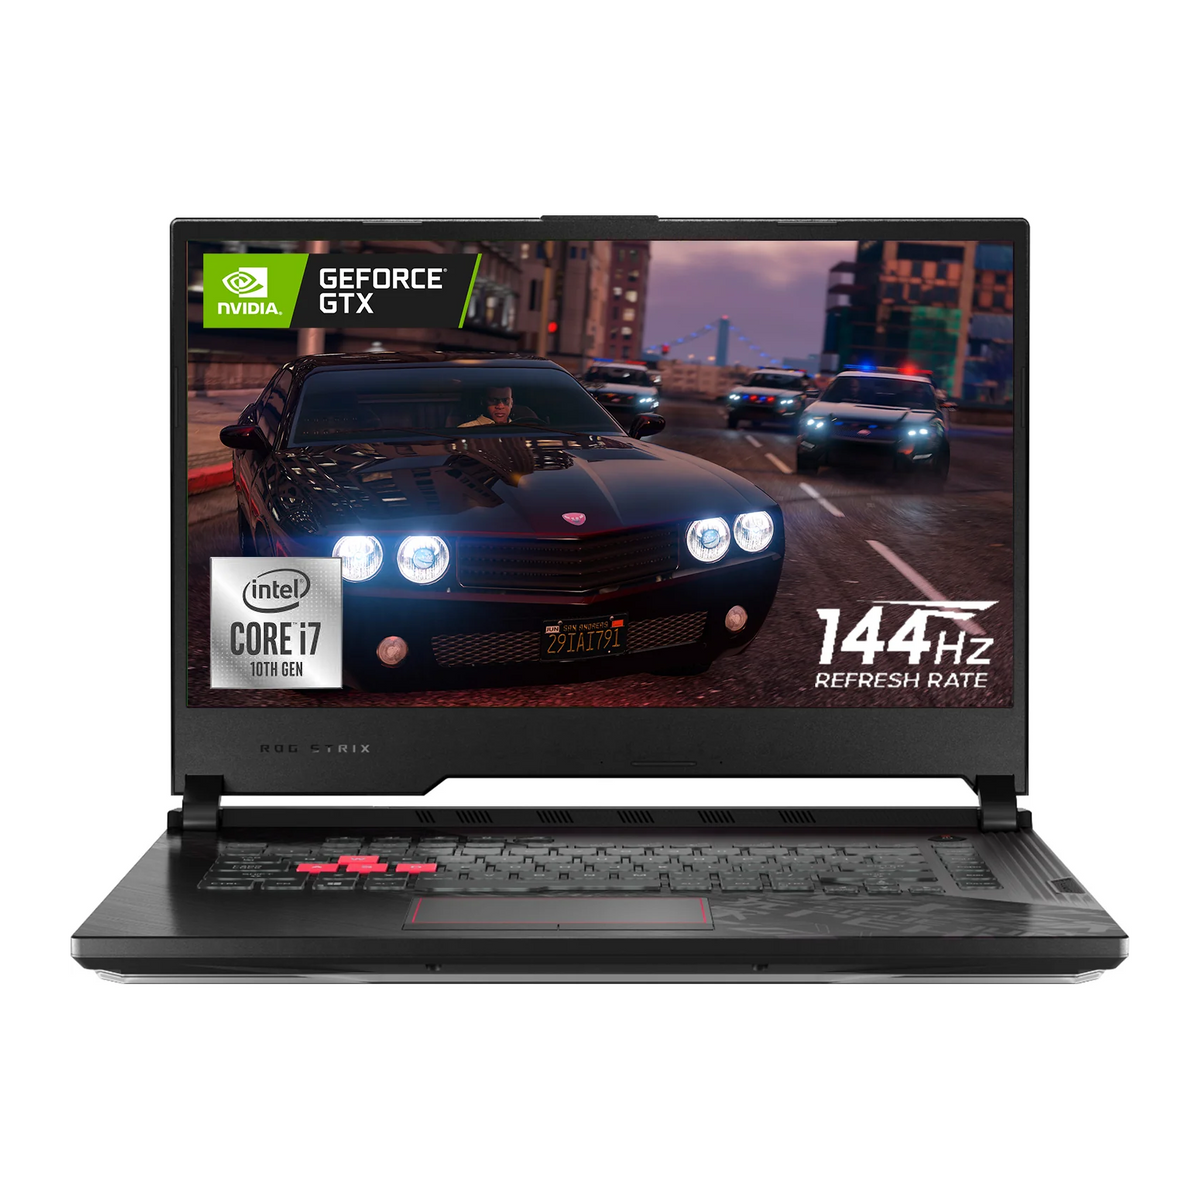 ASUS ROG Strix G15 Gaming Laptop, 15.6" FHD 144Hz Display, Intel Core i7-10750H, GeForce GTX 1650 Ti, RGB Backlit Keyboard, Wi-Fi 6, Windows 10 Home, Black